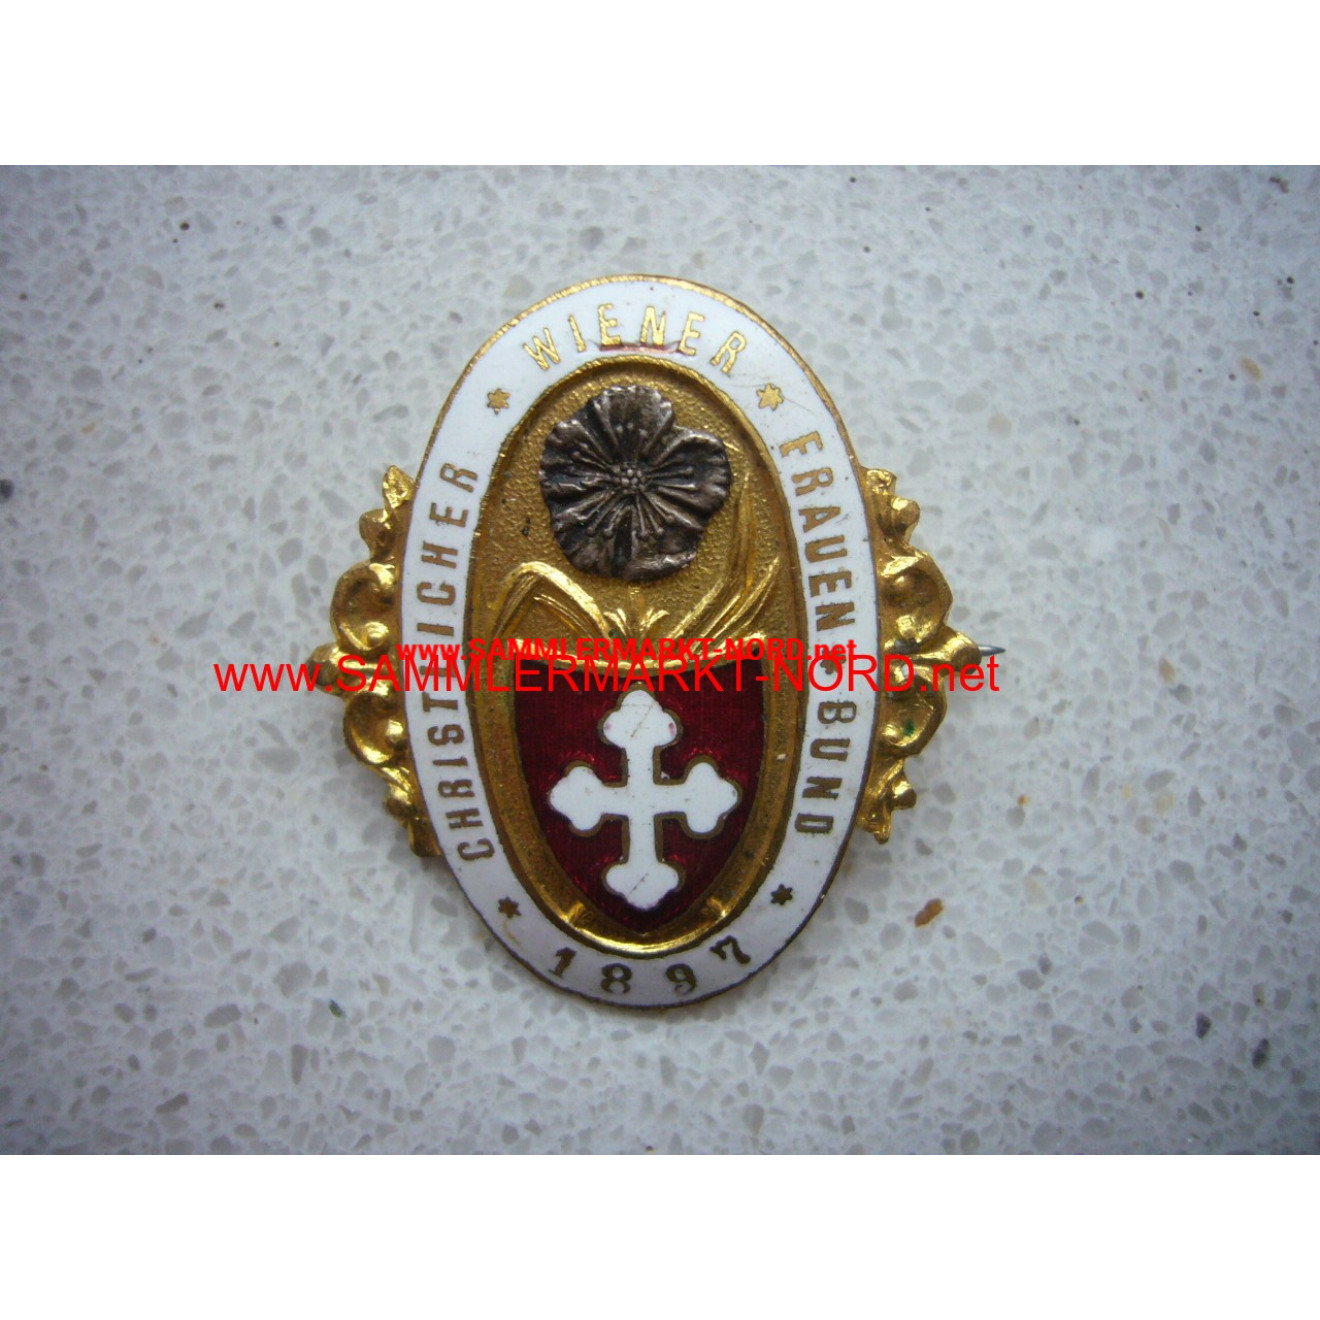 Christian Vienna Women's Association - member badge